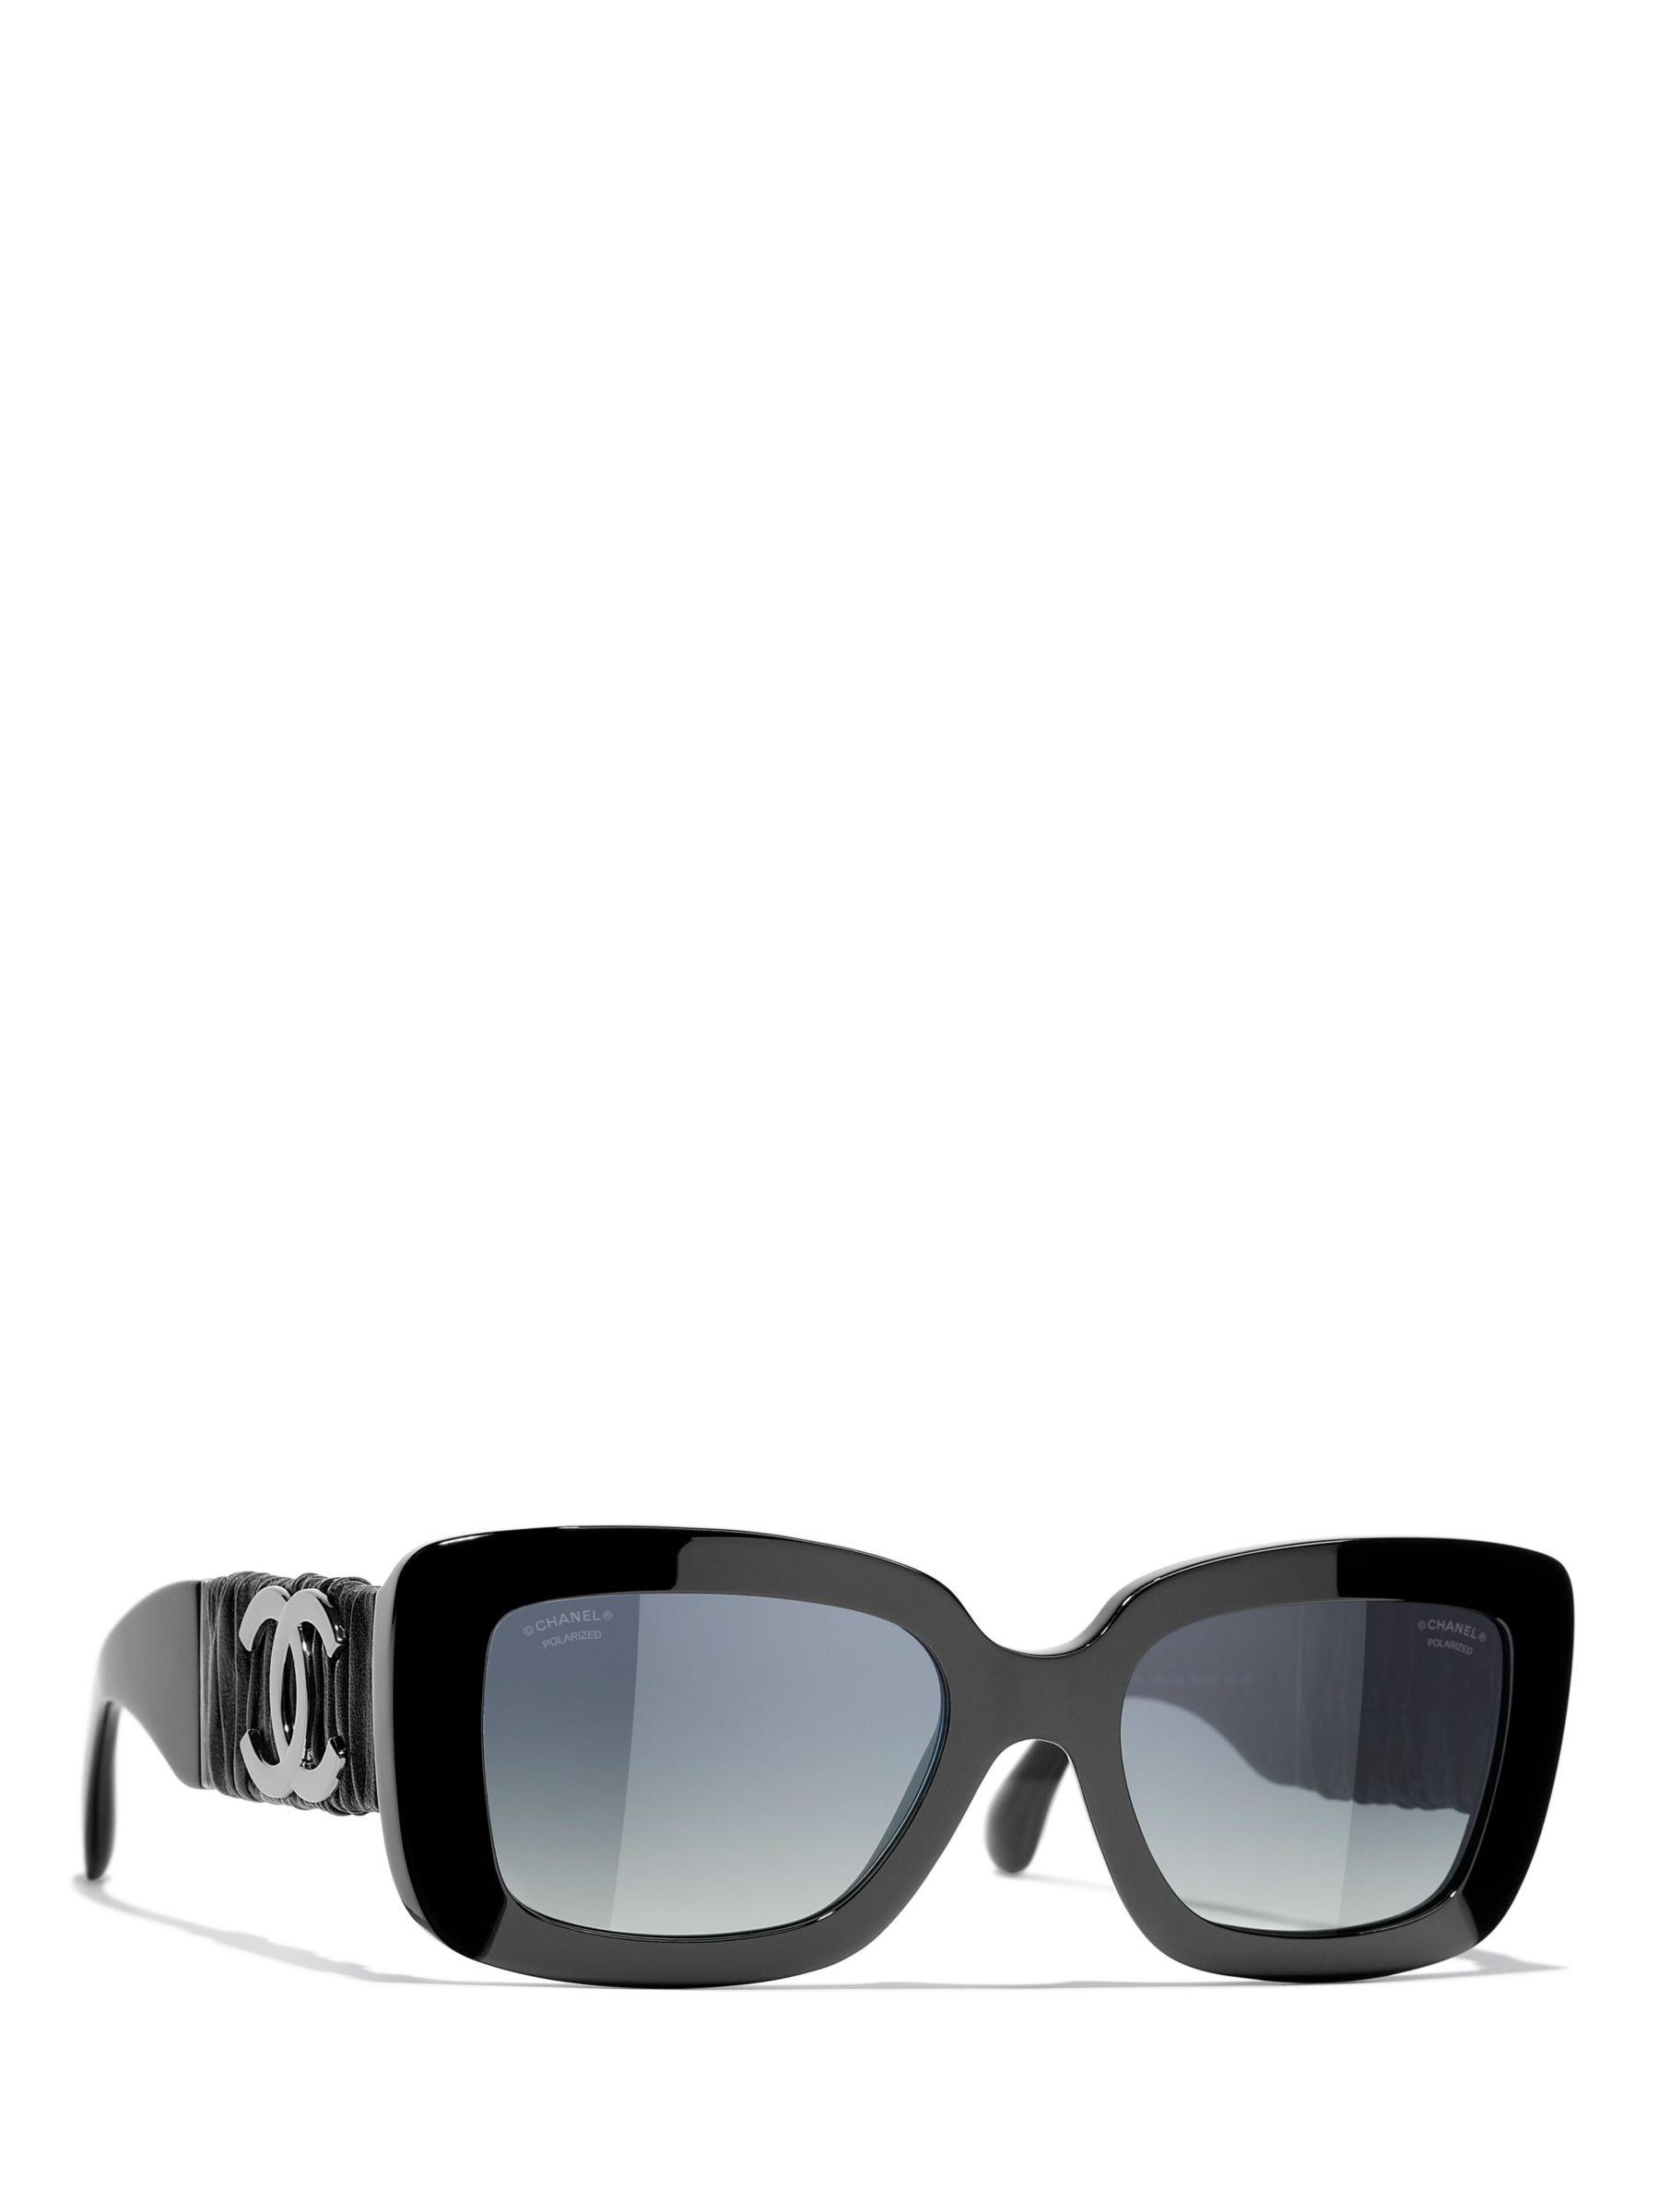 Rectangular Sunglasses Ch5473q Black/blue Gradient